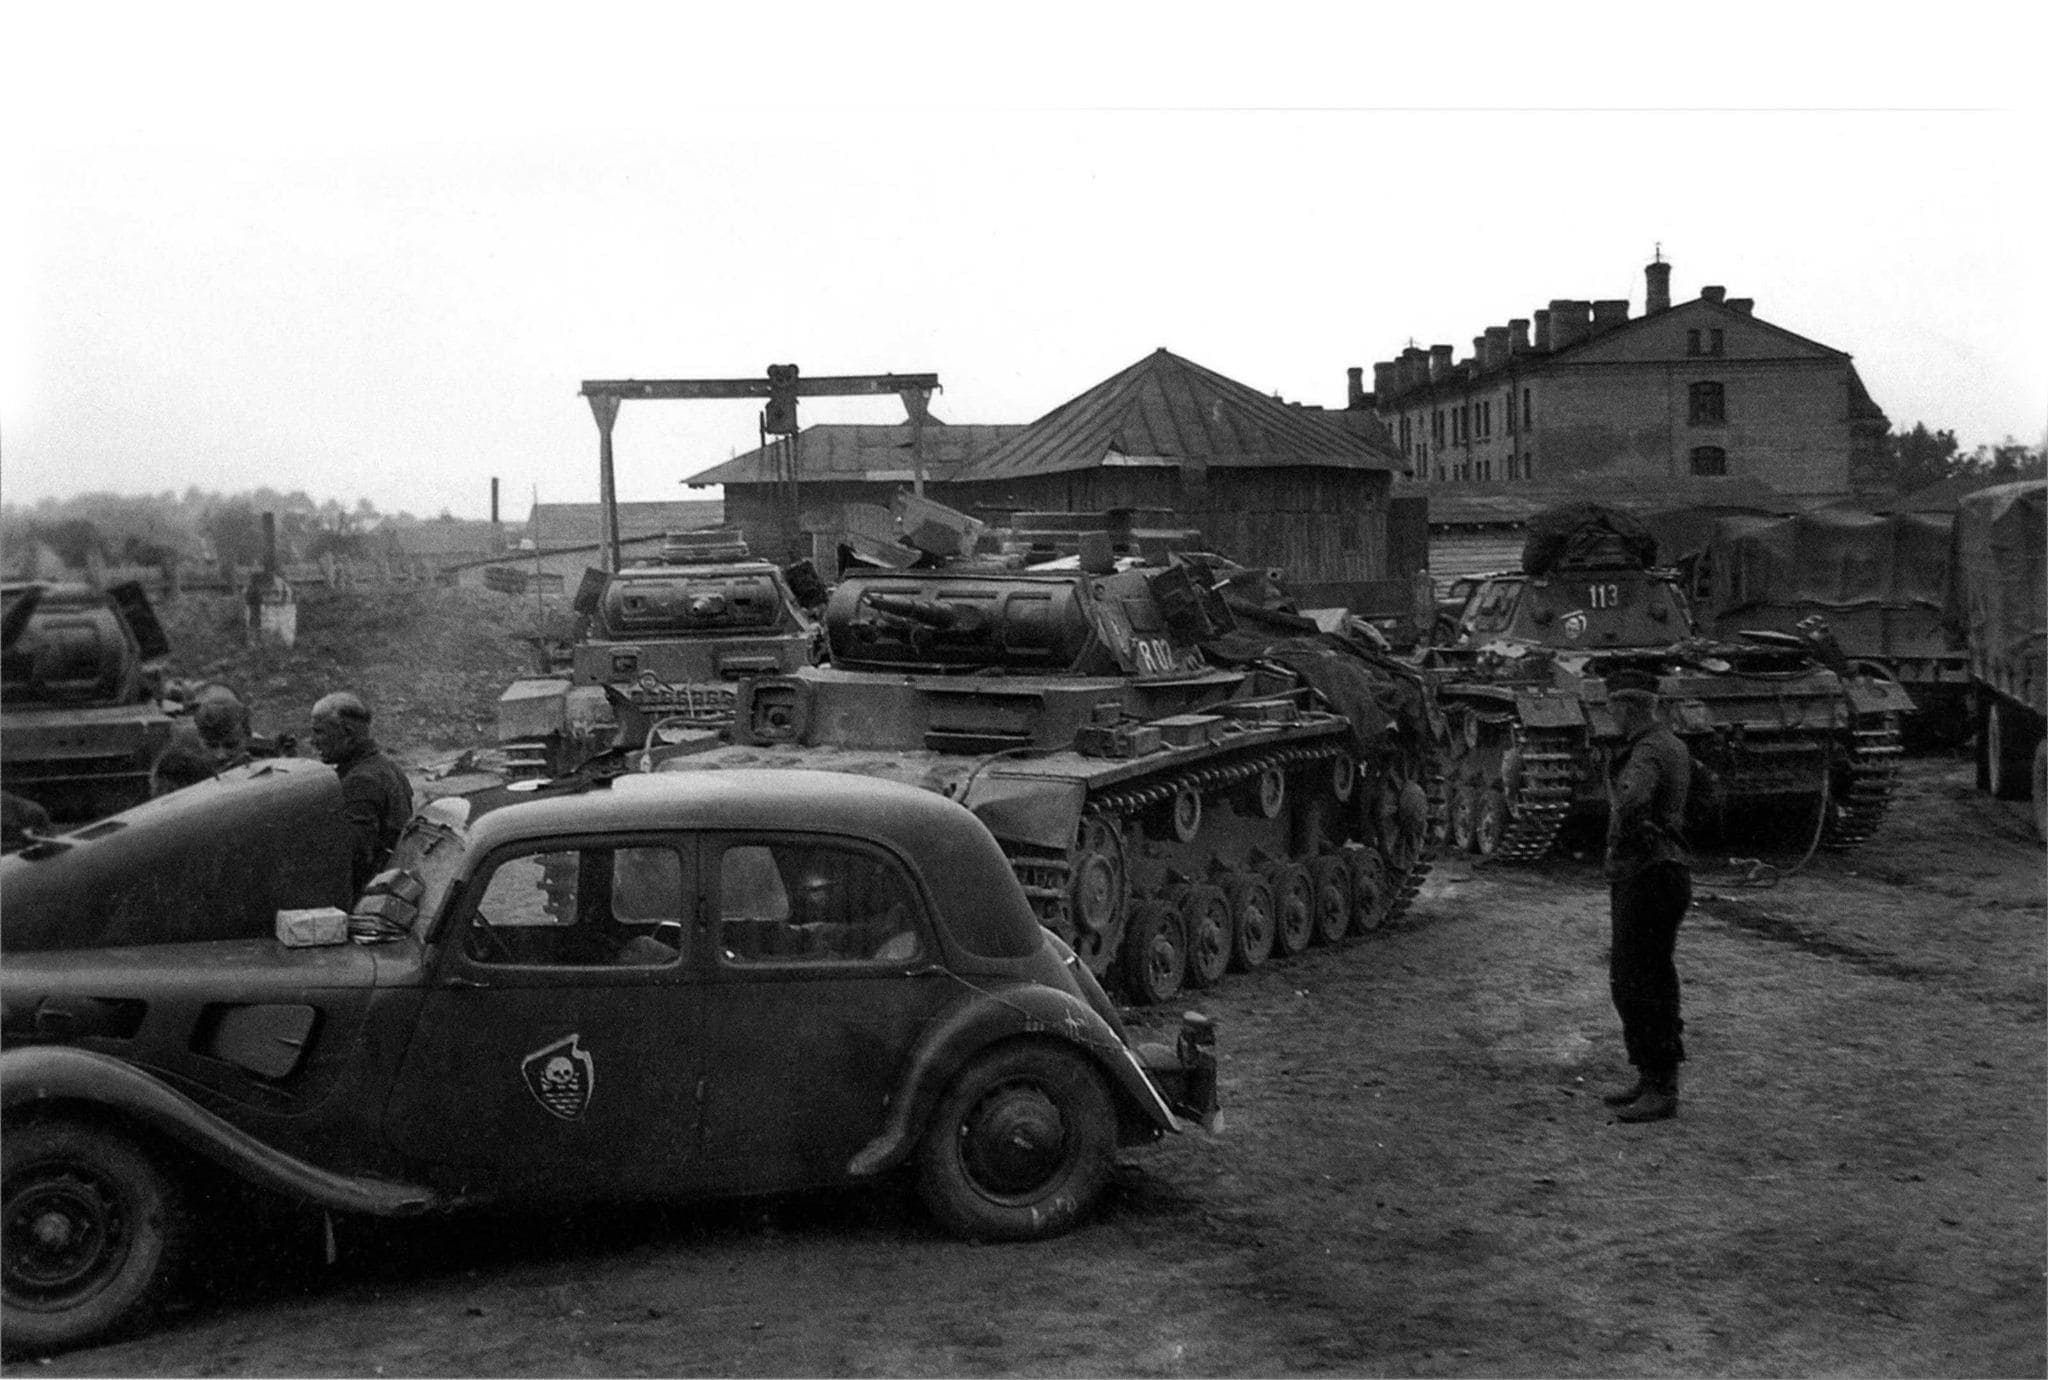 18 танковая дивизия вермахта не встречала сопротивления